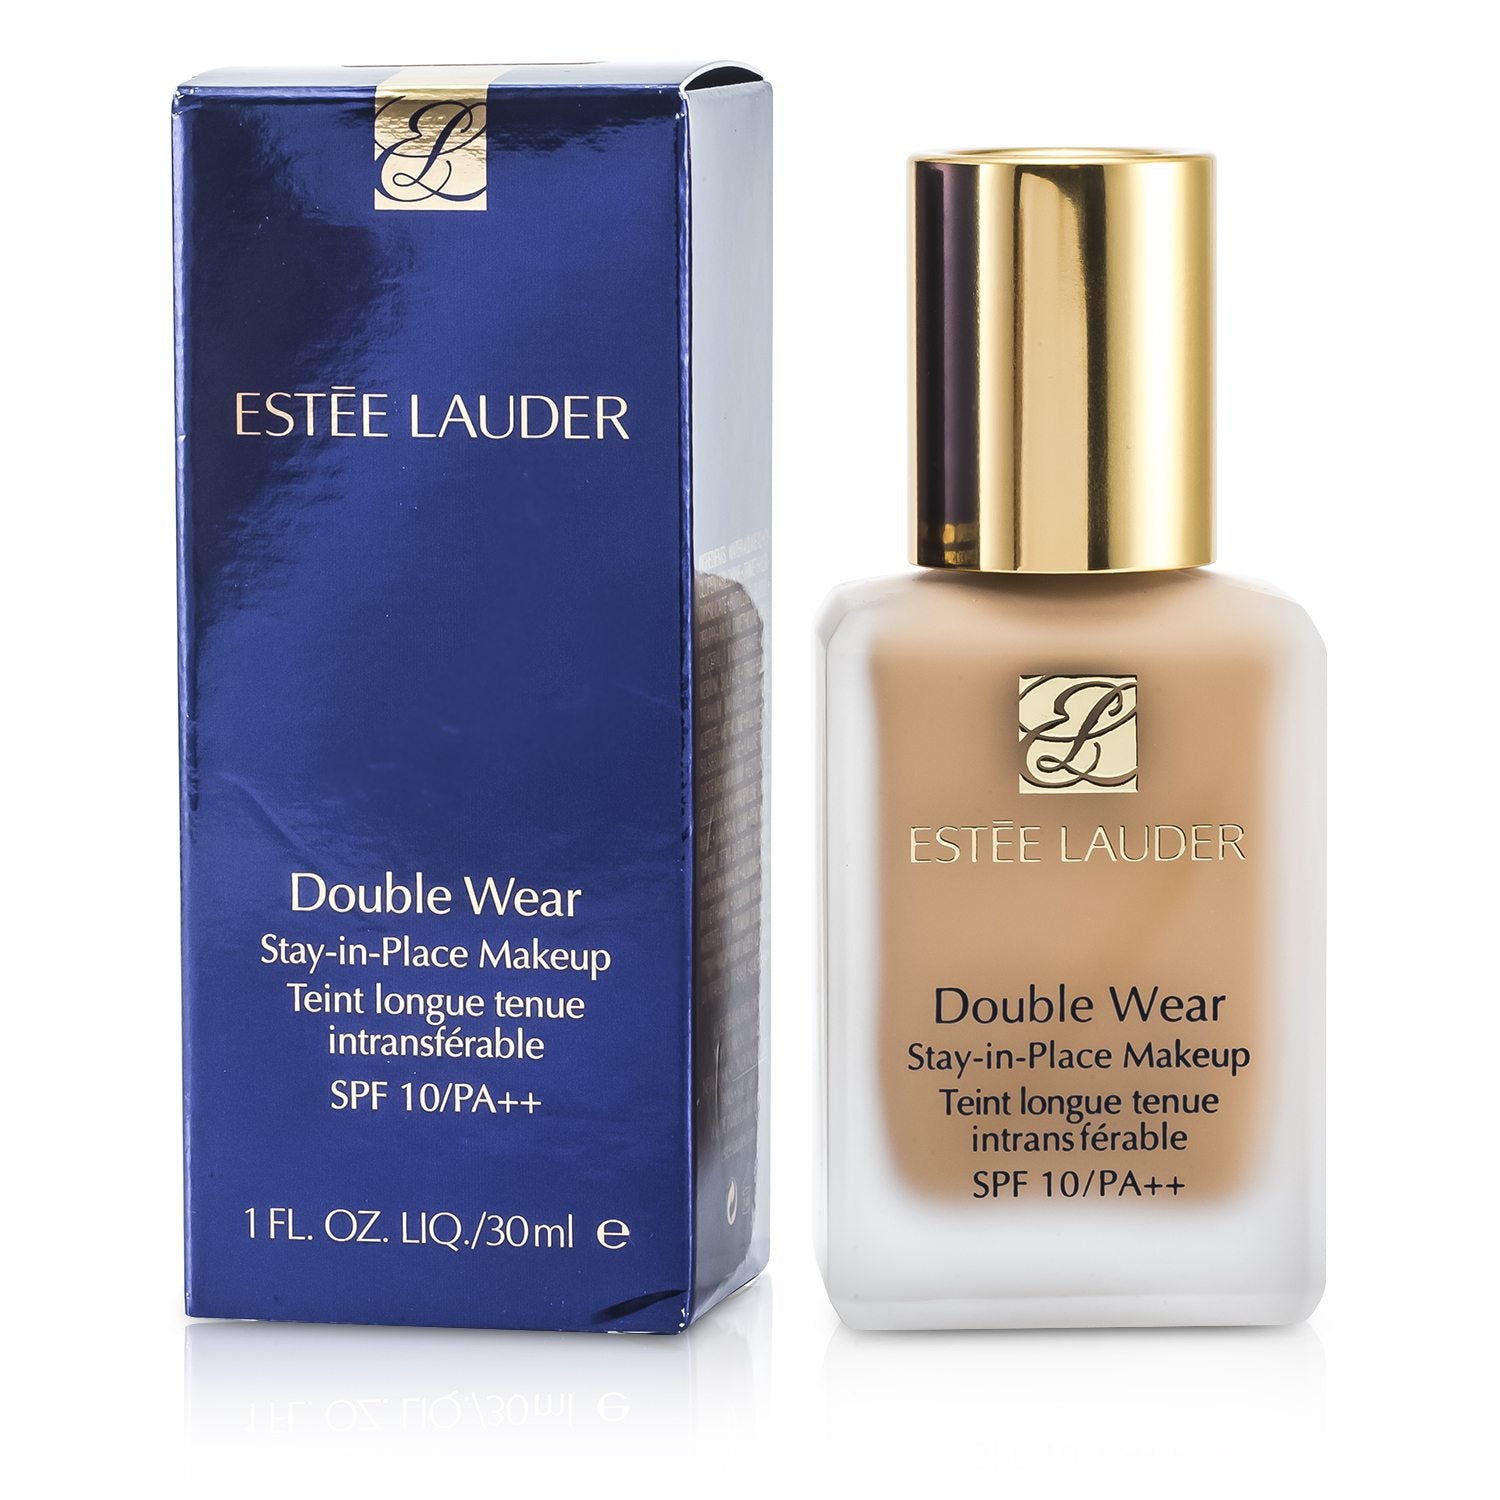 Estee Lauder Double Wear Stay-In-Place Makeup, 05 Shell Beige - 1 fl oz bottle